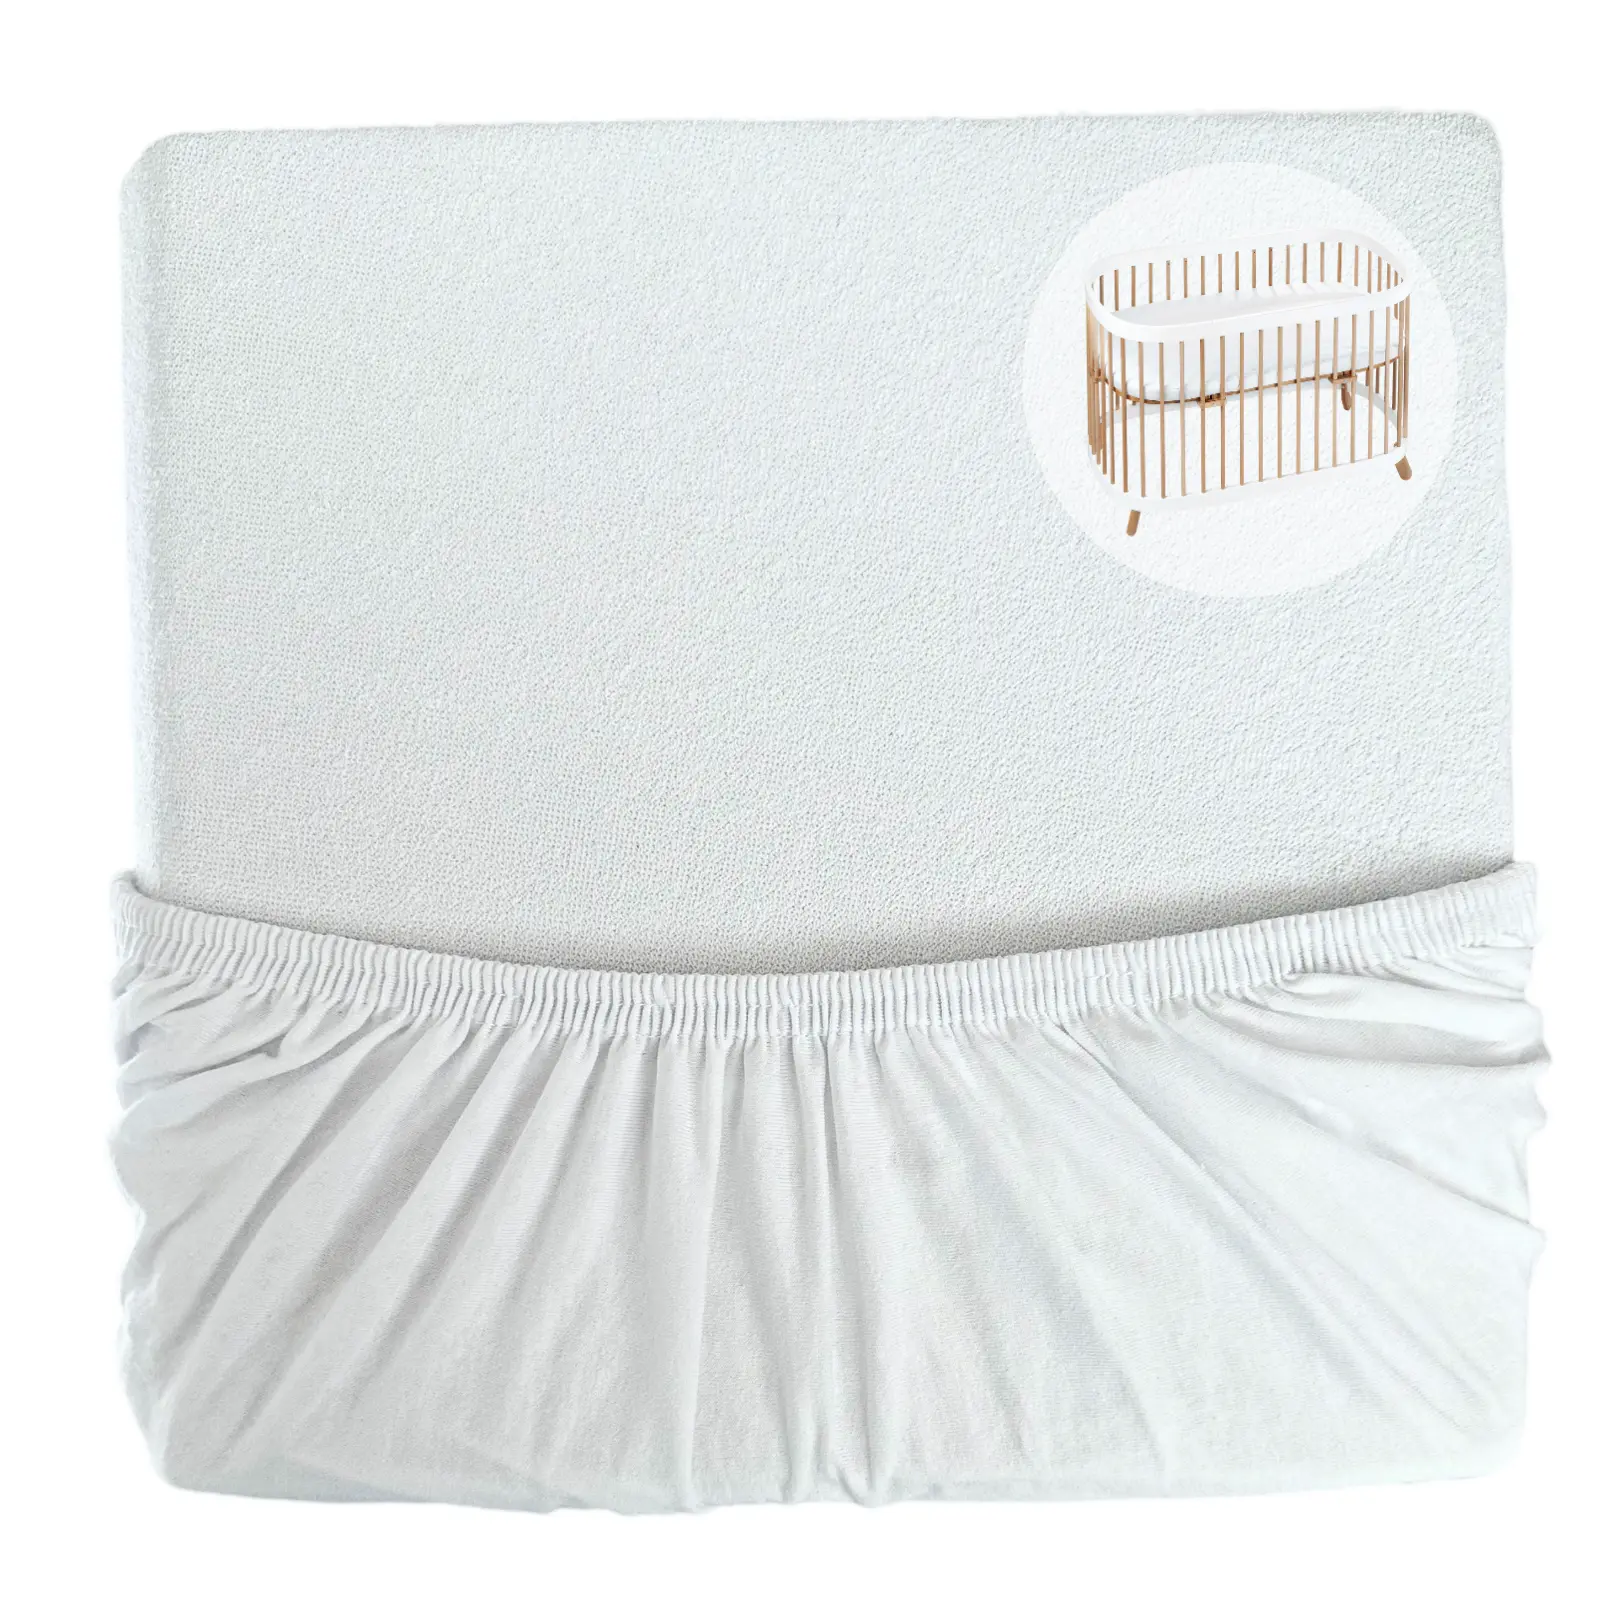 Protezione per materasso - protezione dall'umidità - MAXI - 70x120